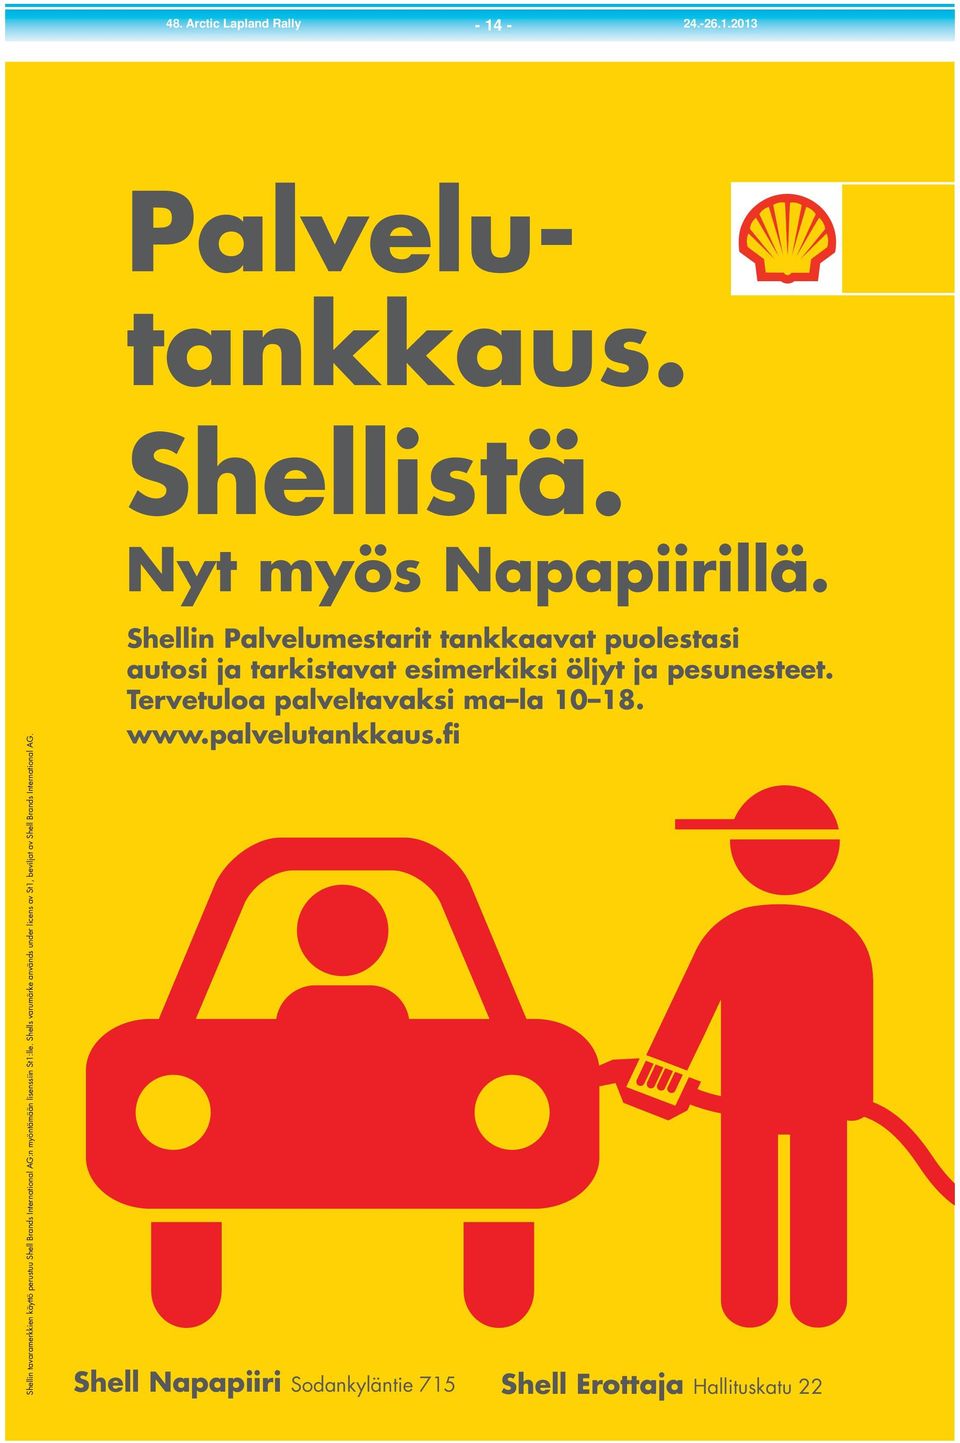 Shells varumärke används under licens av St1, beviljat av Shell Brands International AG. Shellistä. Nyt myös Napapiirillä.